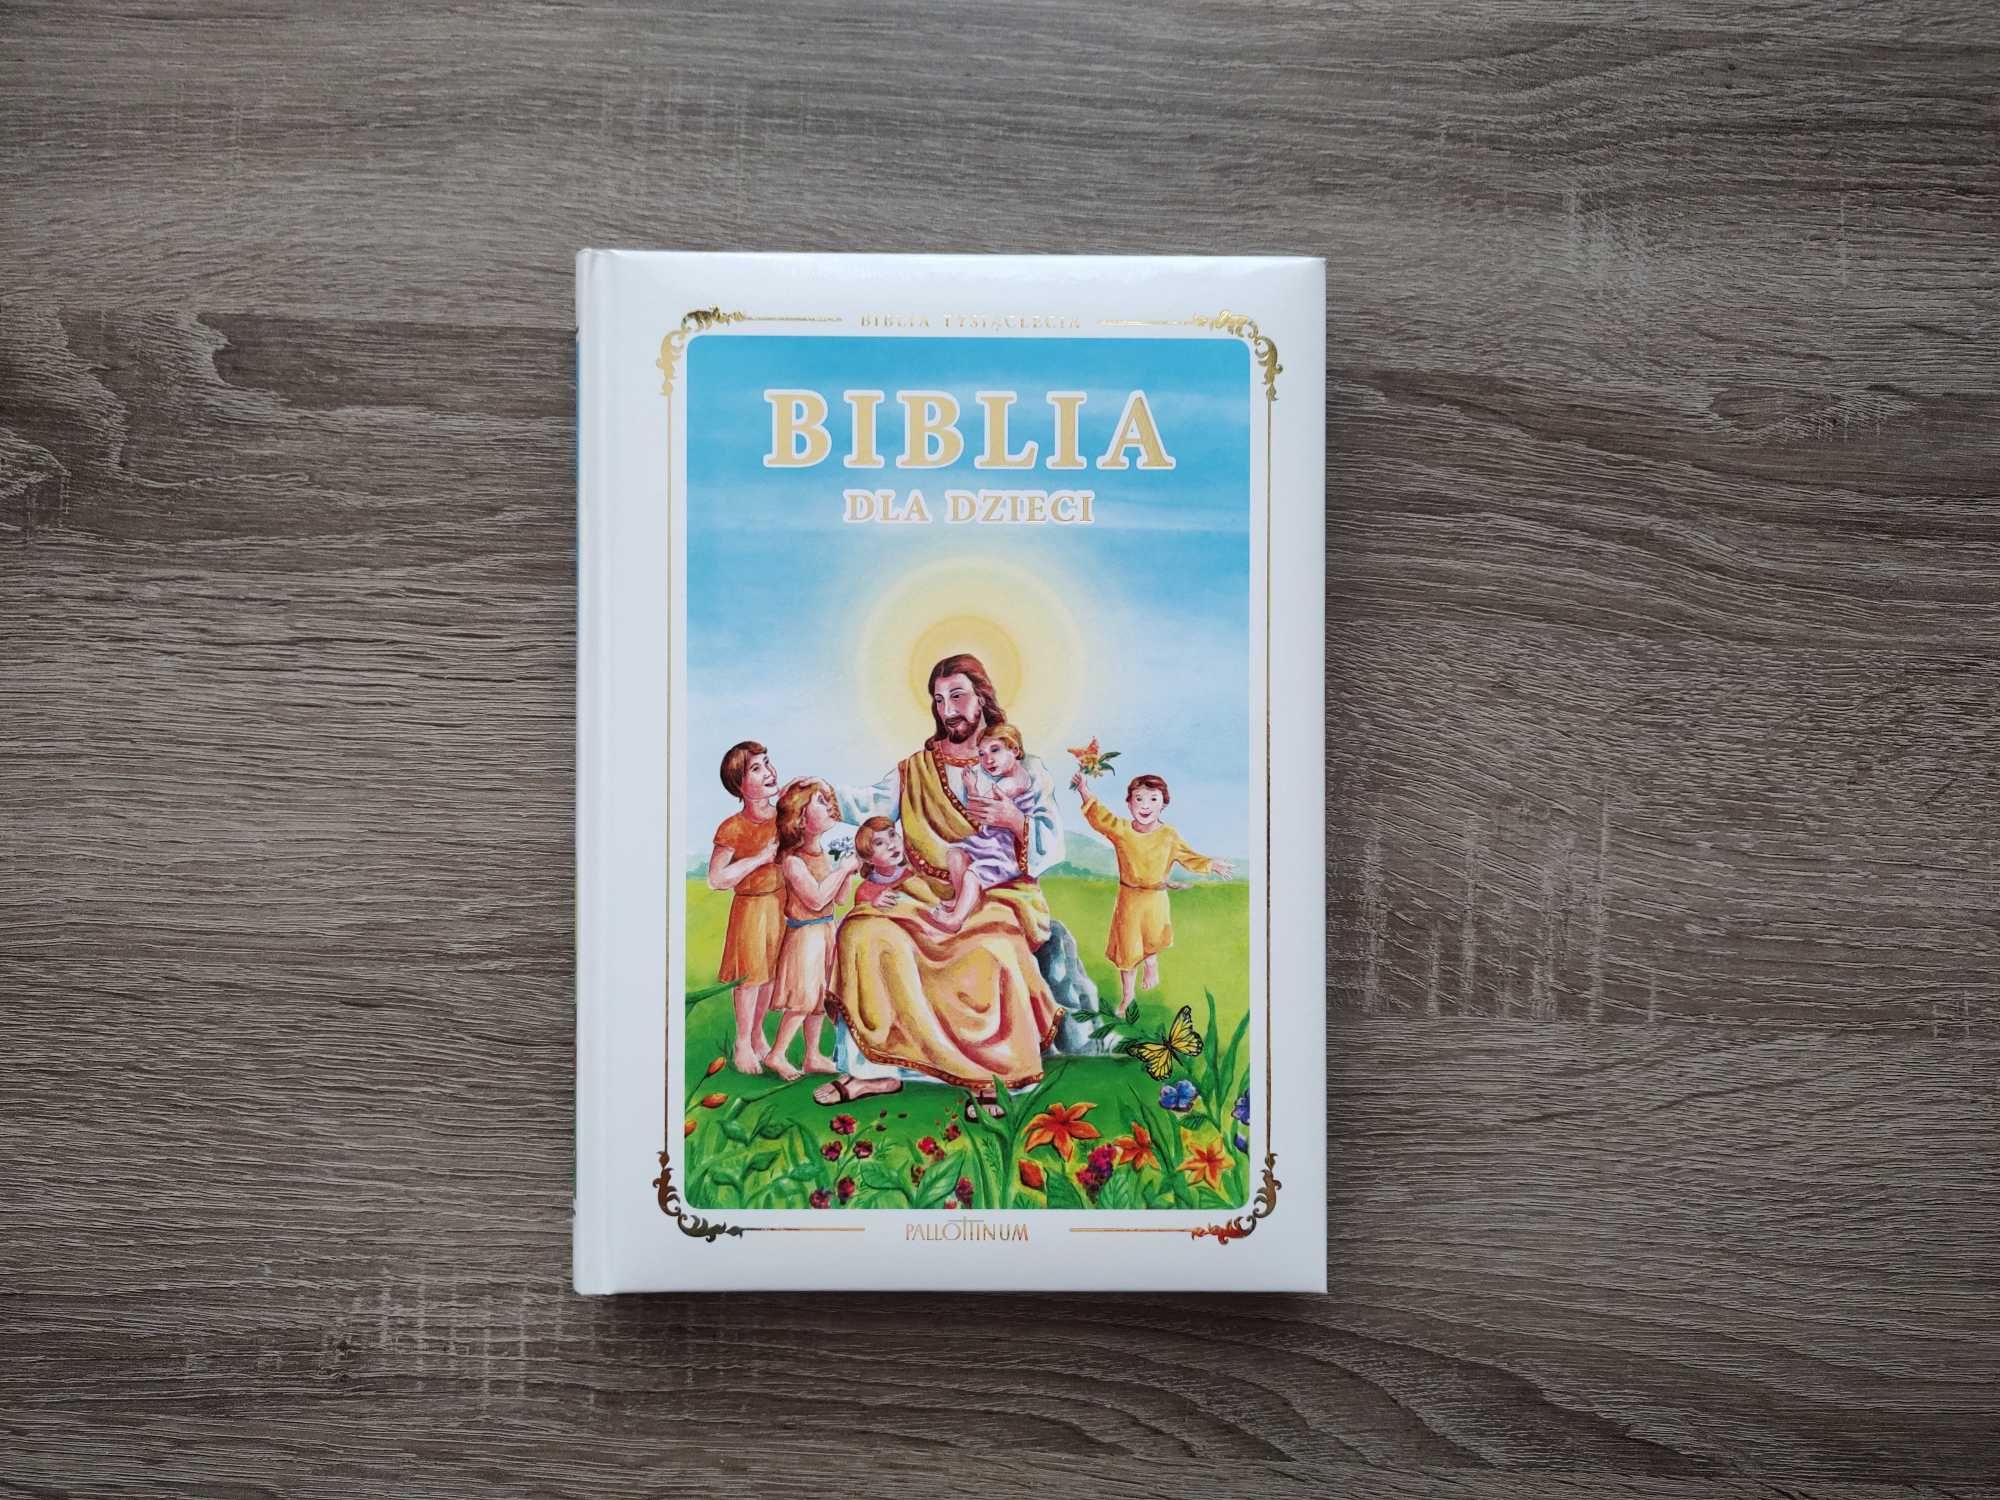 Biblia dla dzieci | wydawnictwo Pallottinum